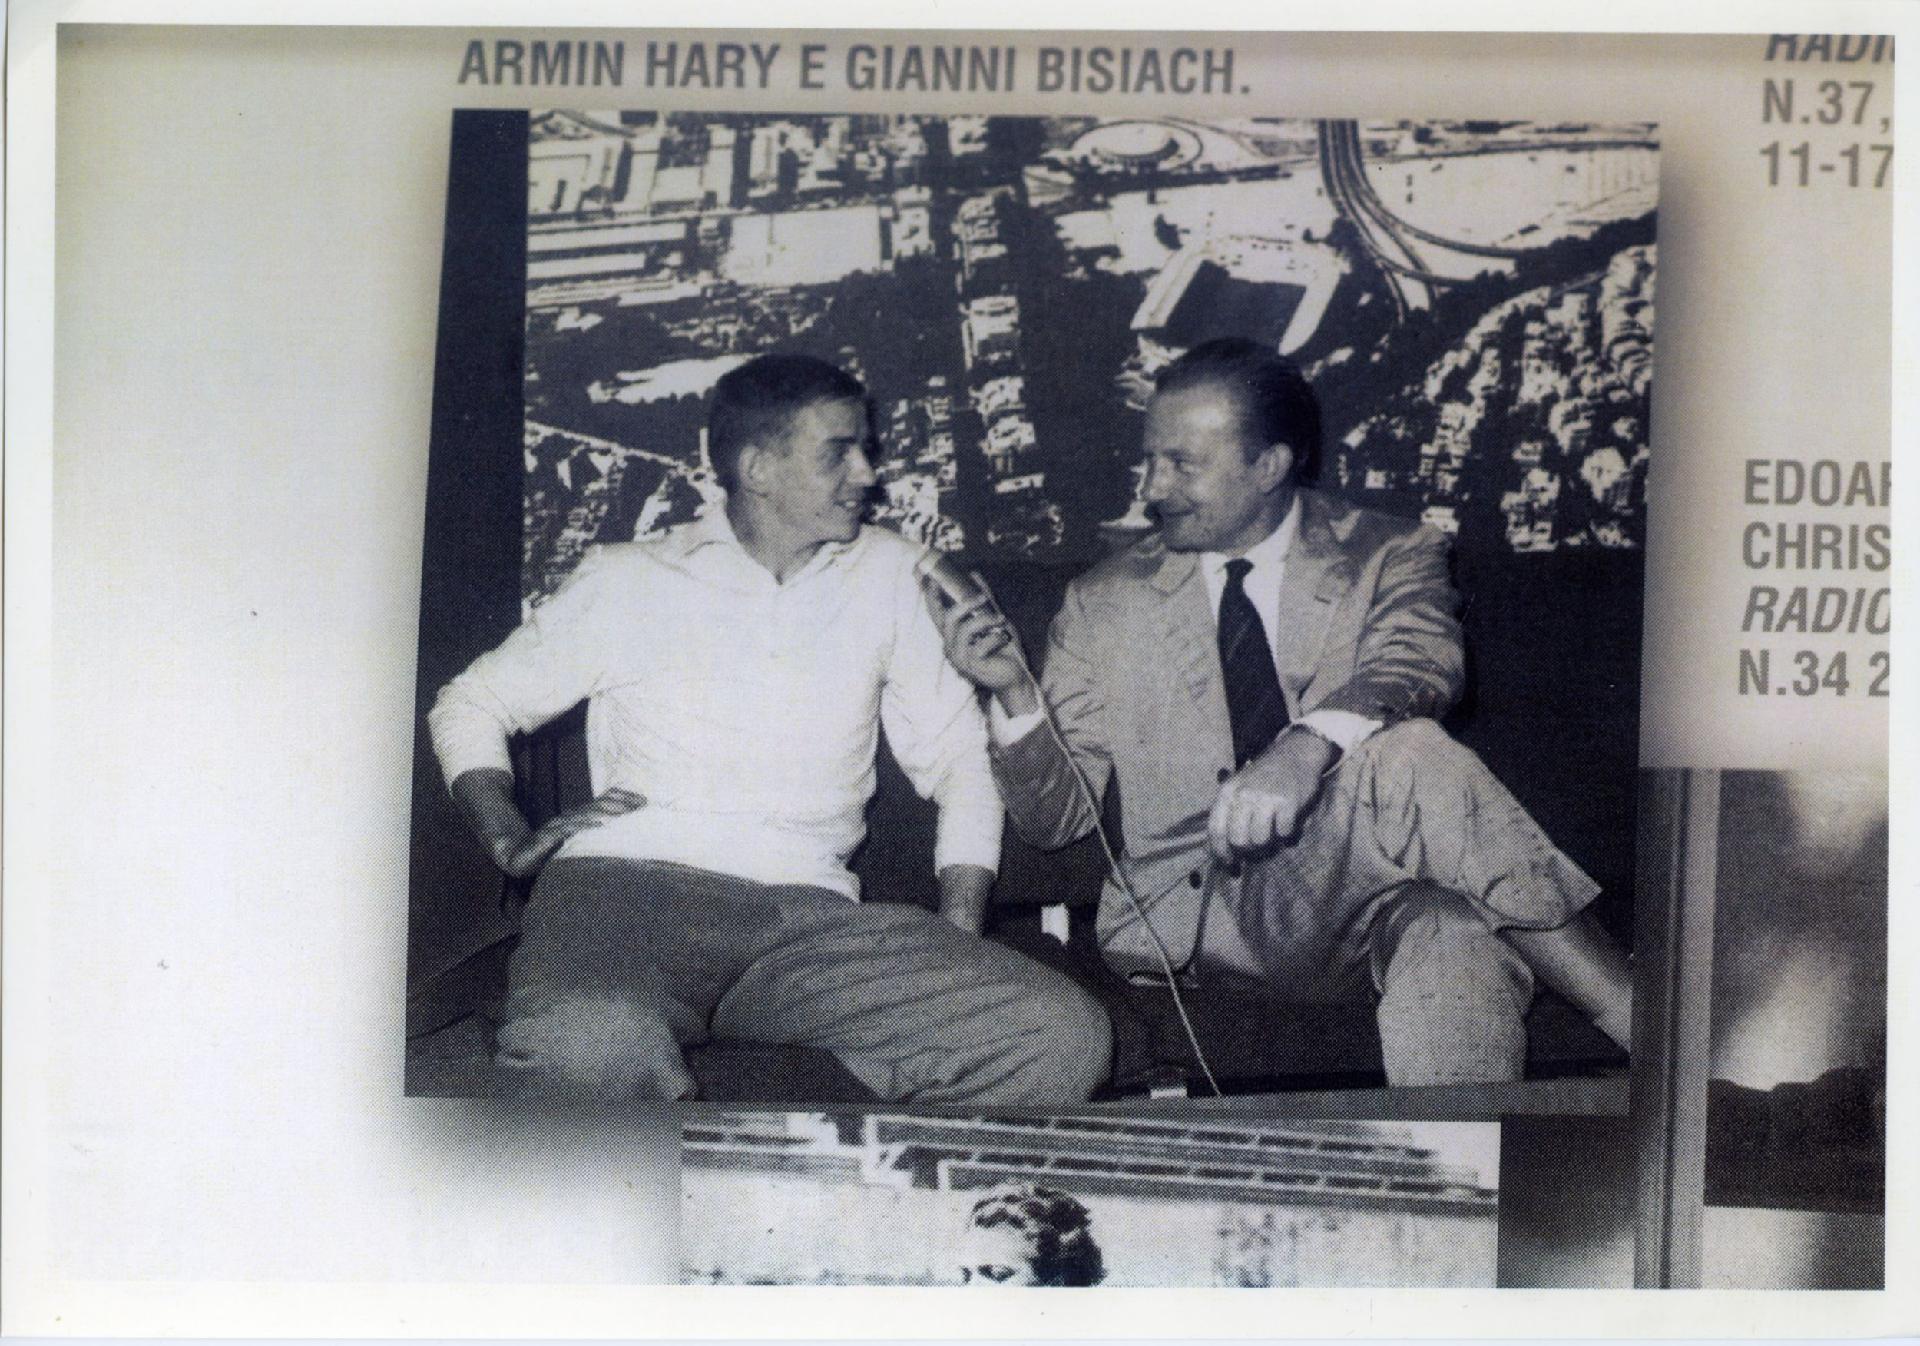 Gianni Bisiach intervista Armin Hary, vincitore dei 100 metri piani durante le Olimpiadi di Roma nel 1960